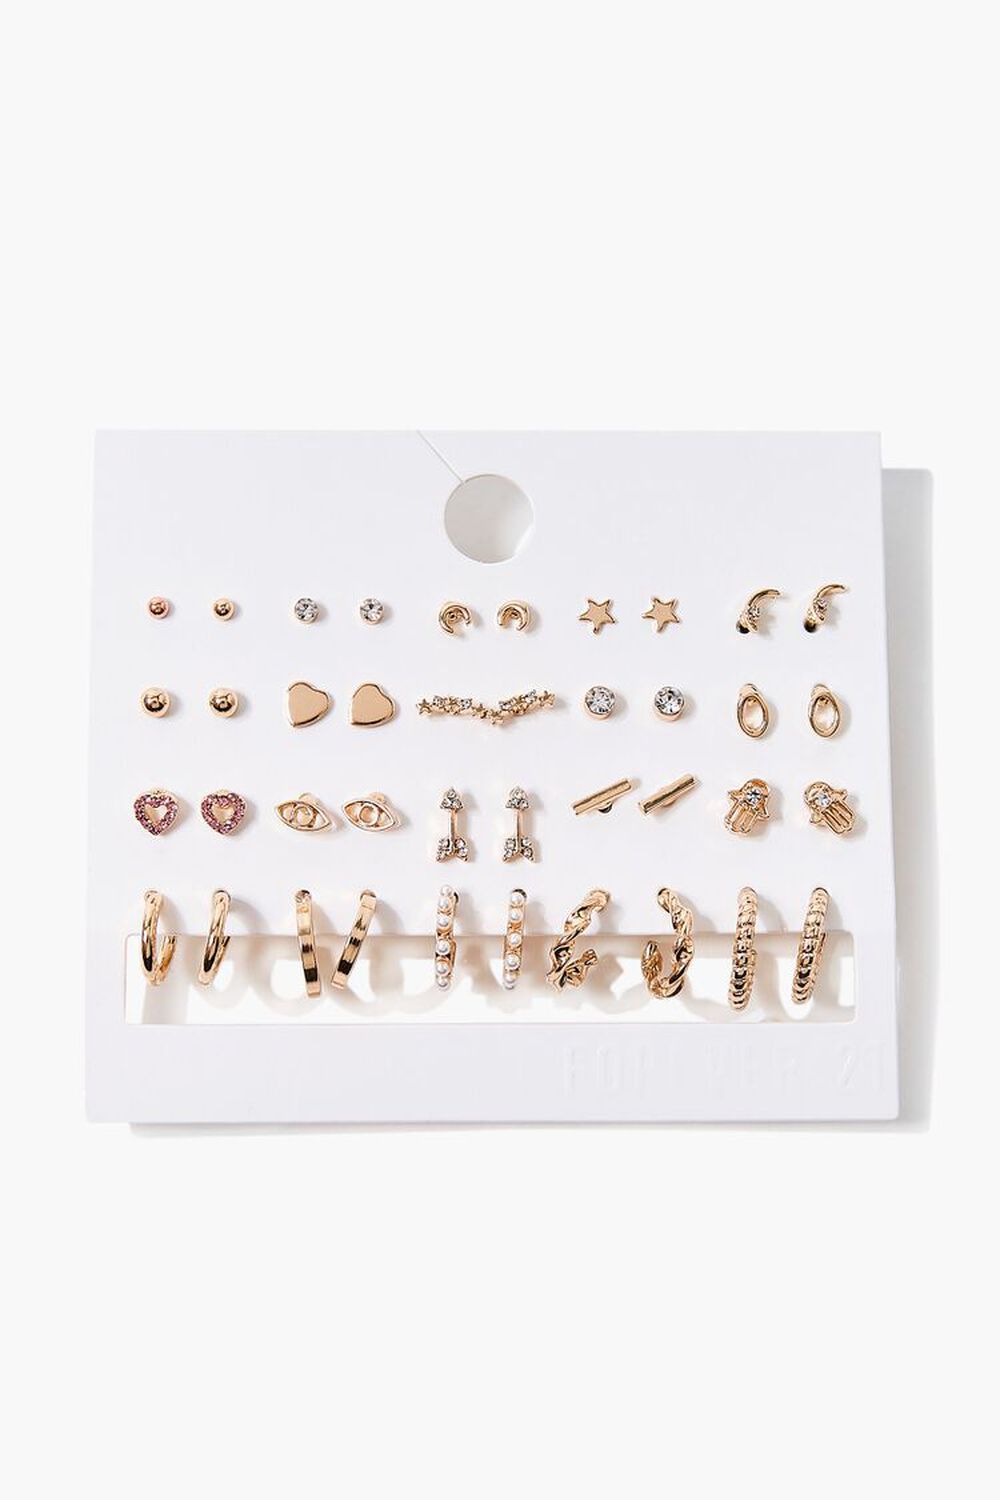 GOLD Variety Hoop & Stud Earring Set, image 1